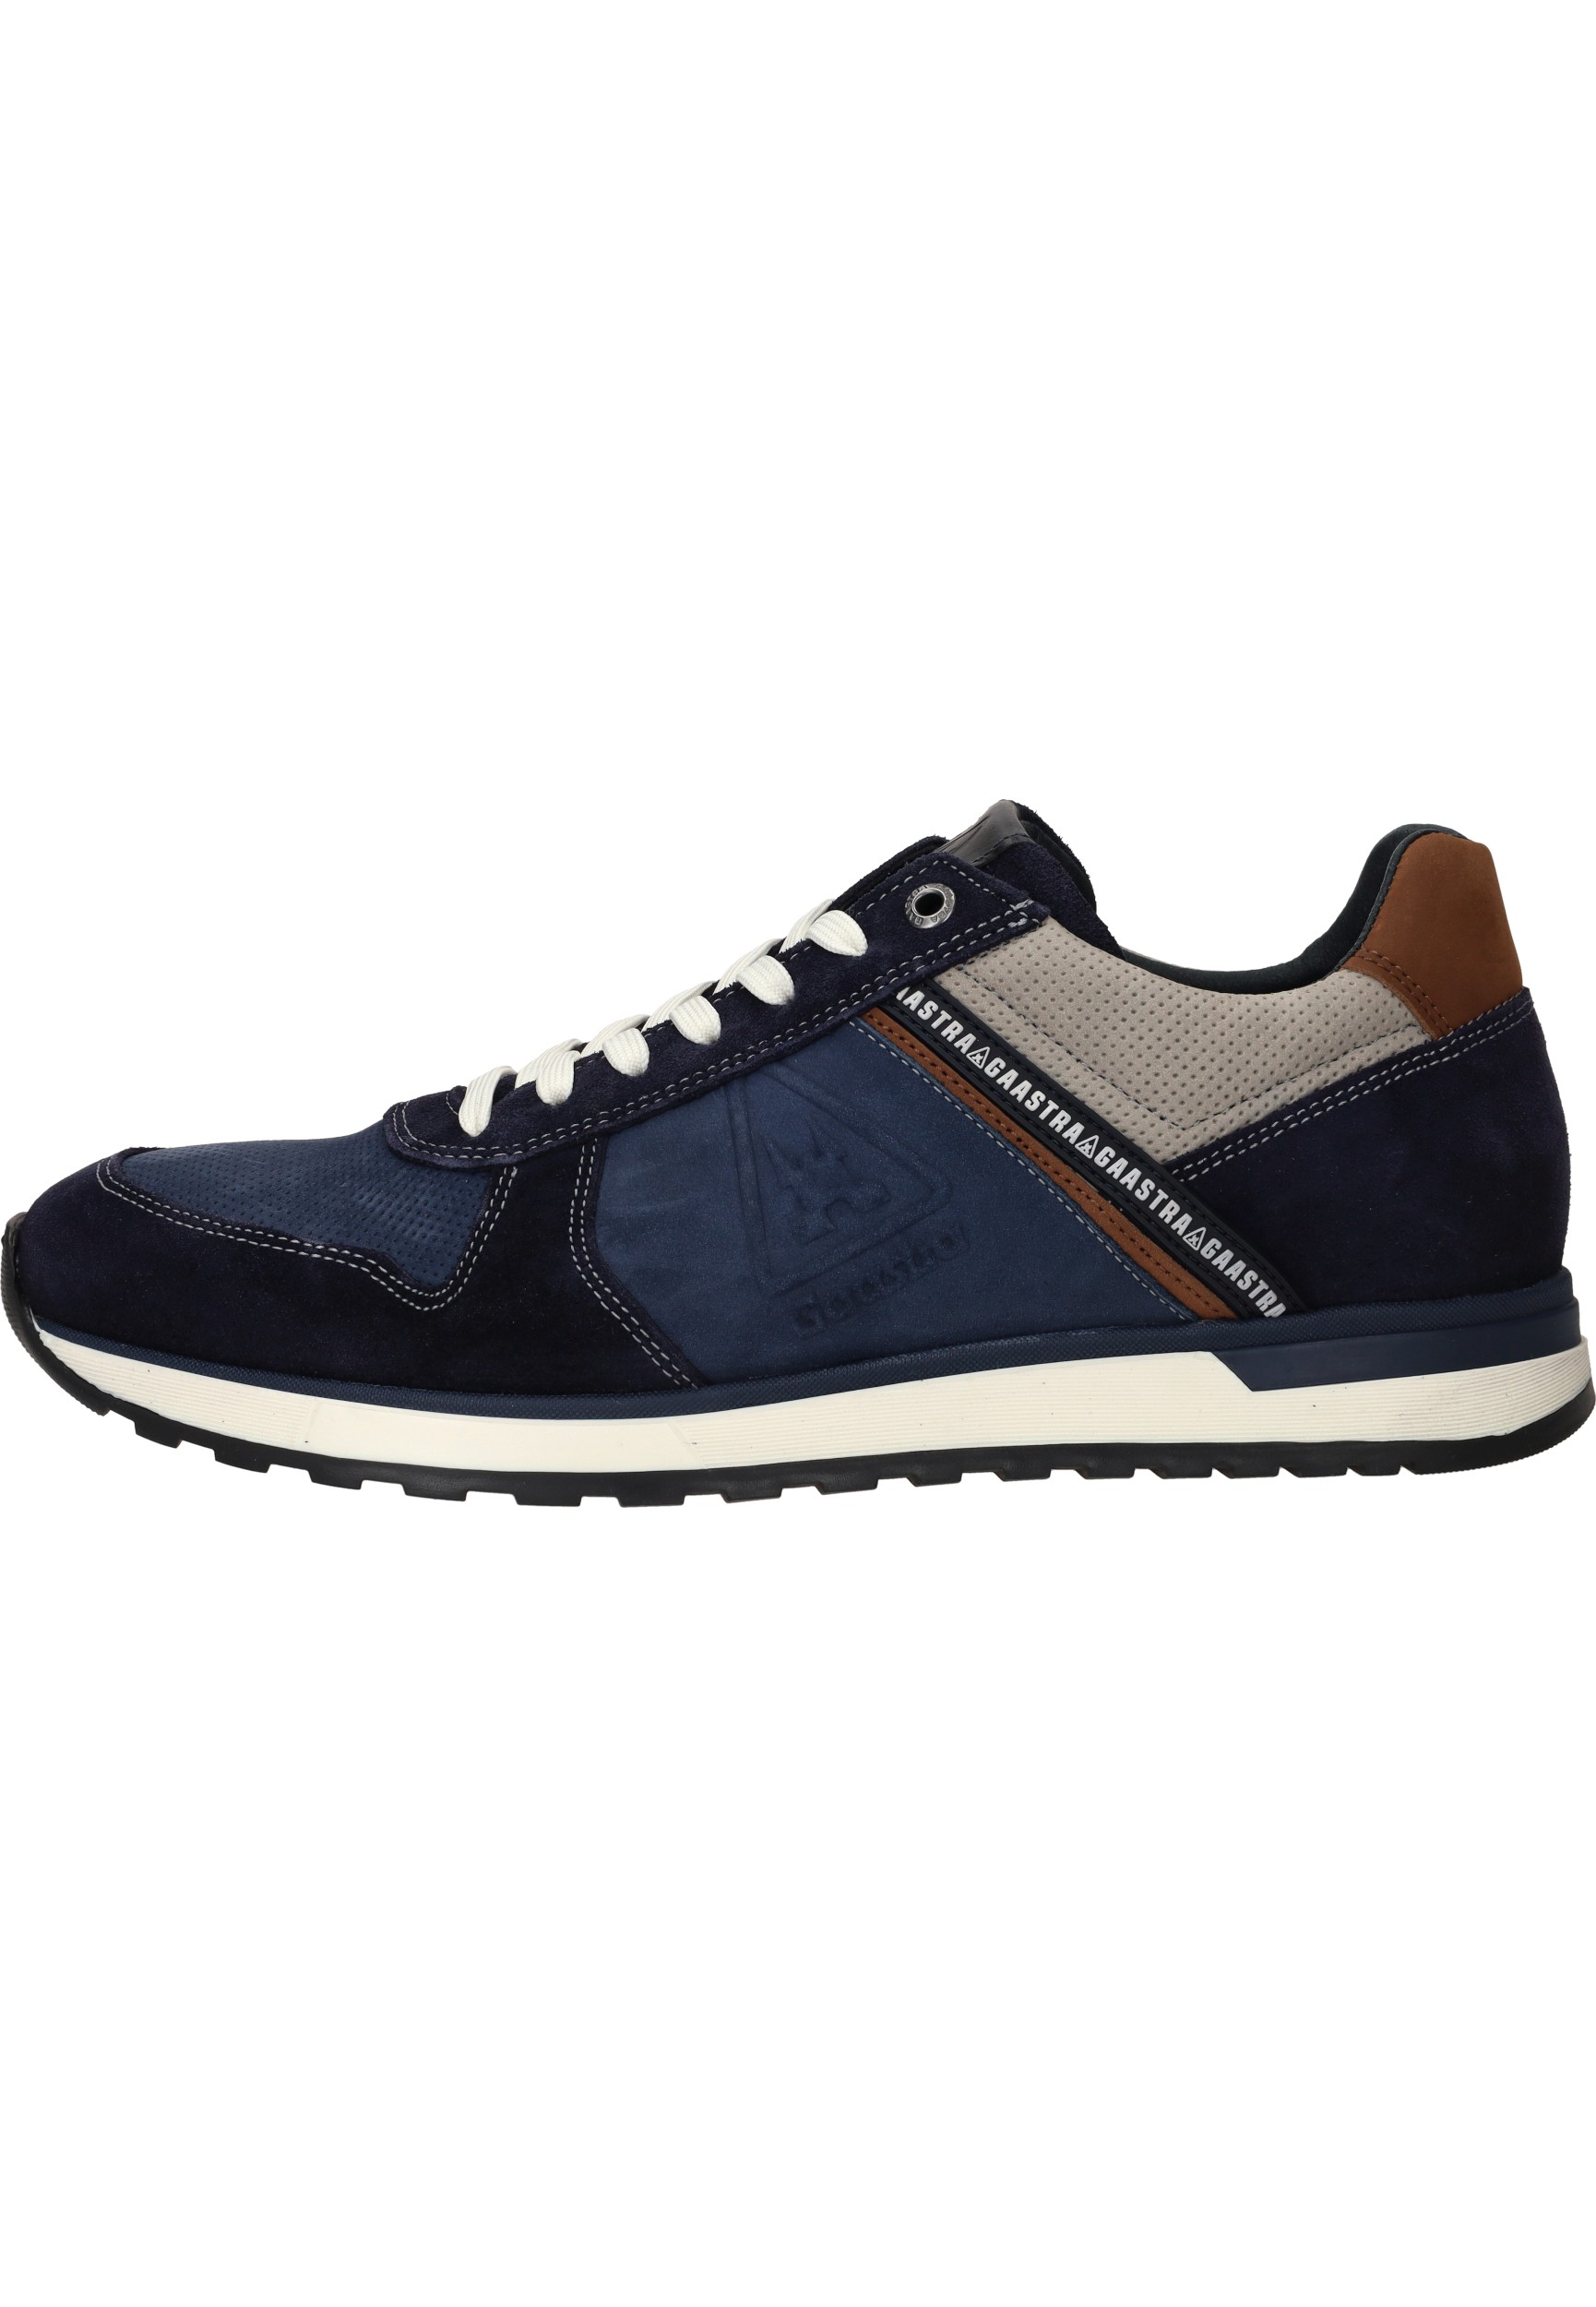 Gaastra - Sneaker - Male - Navy - Cognac - 45 - Sneakers